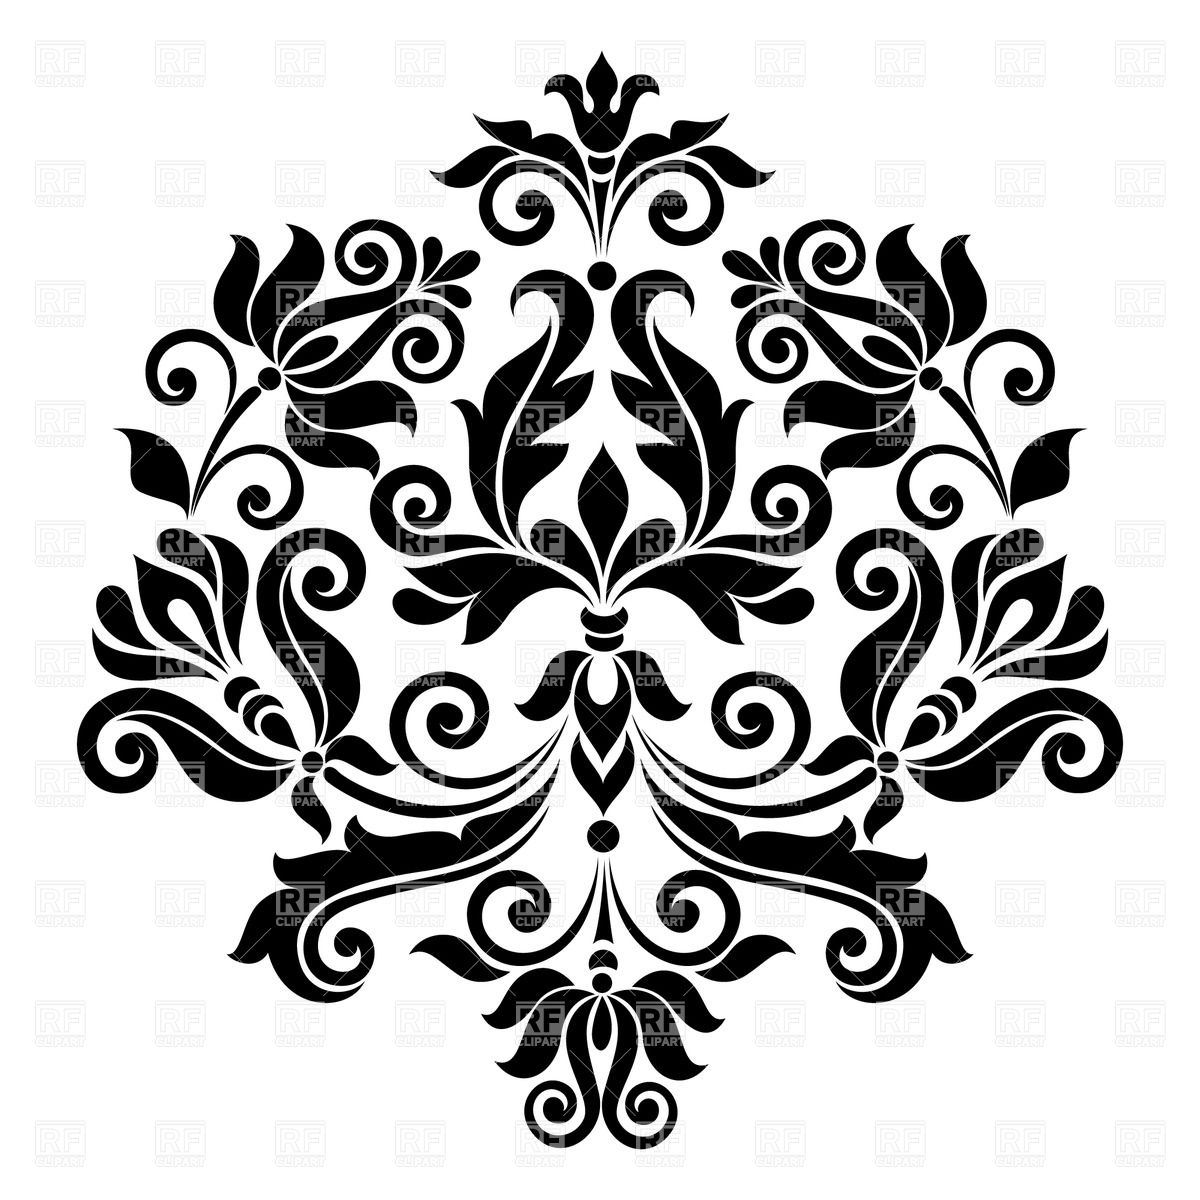 19 Black Flower Vector Art Images Black And White Flower Vector Free